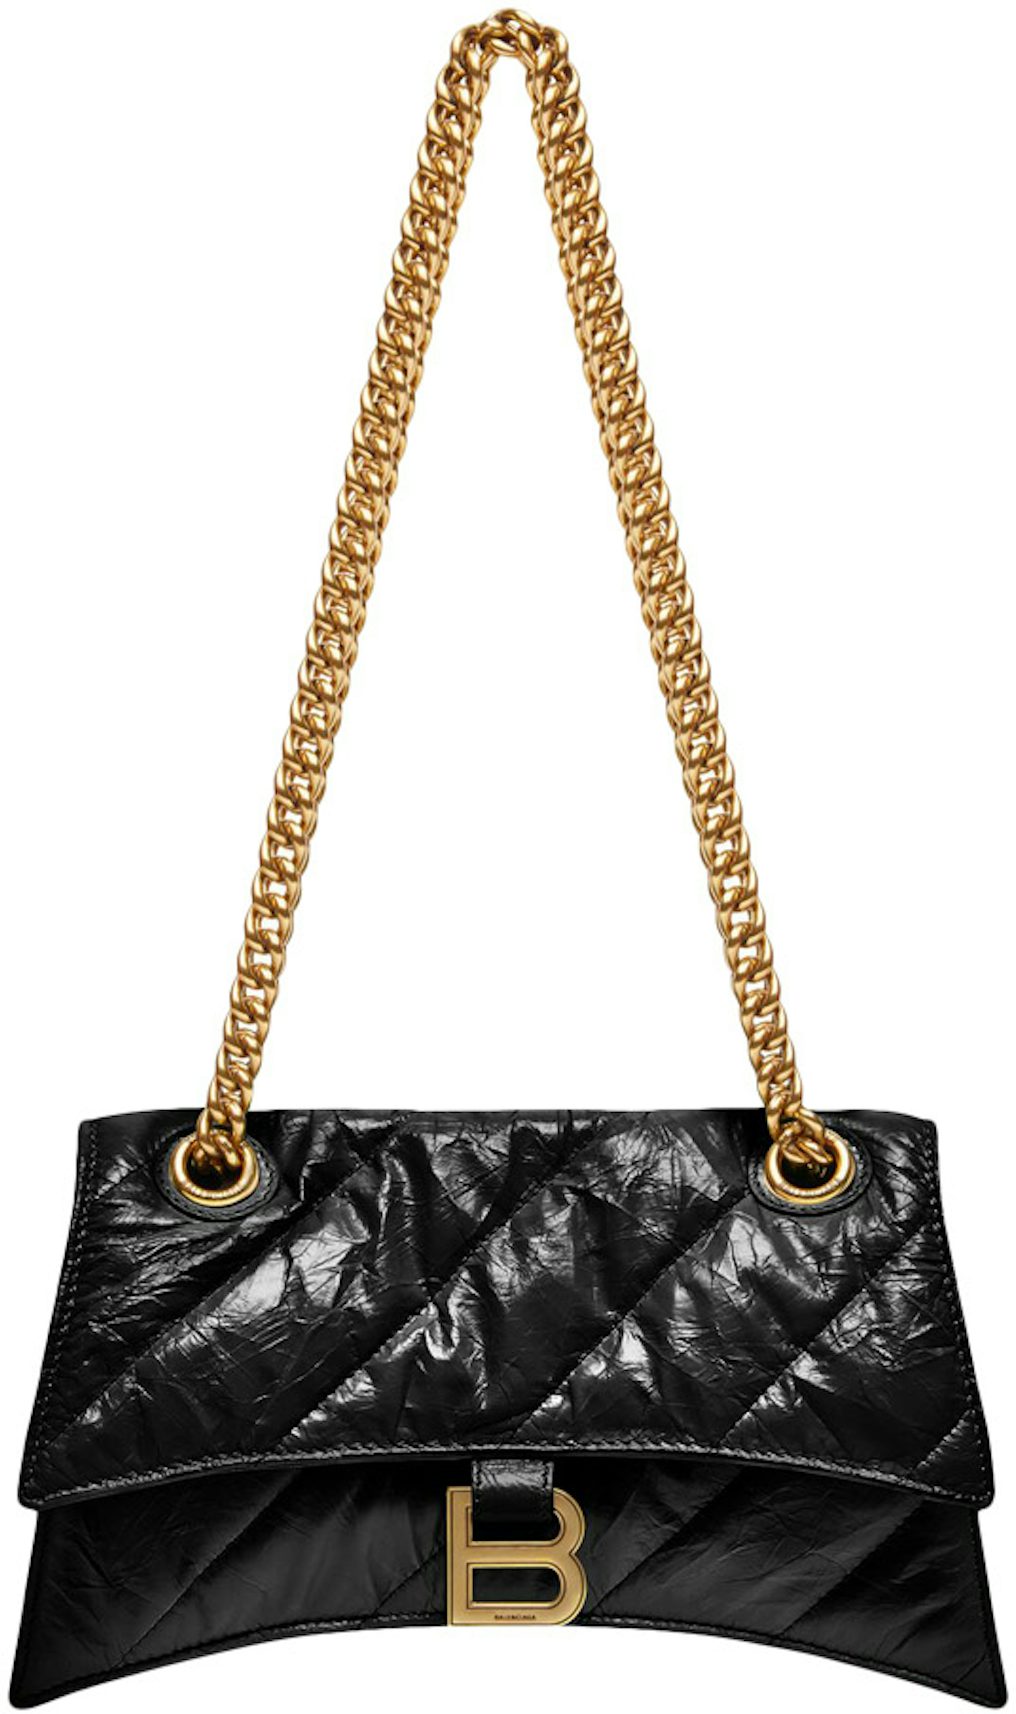 Balenciaga Women's Crush Small Chain Bag Quilted Black